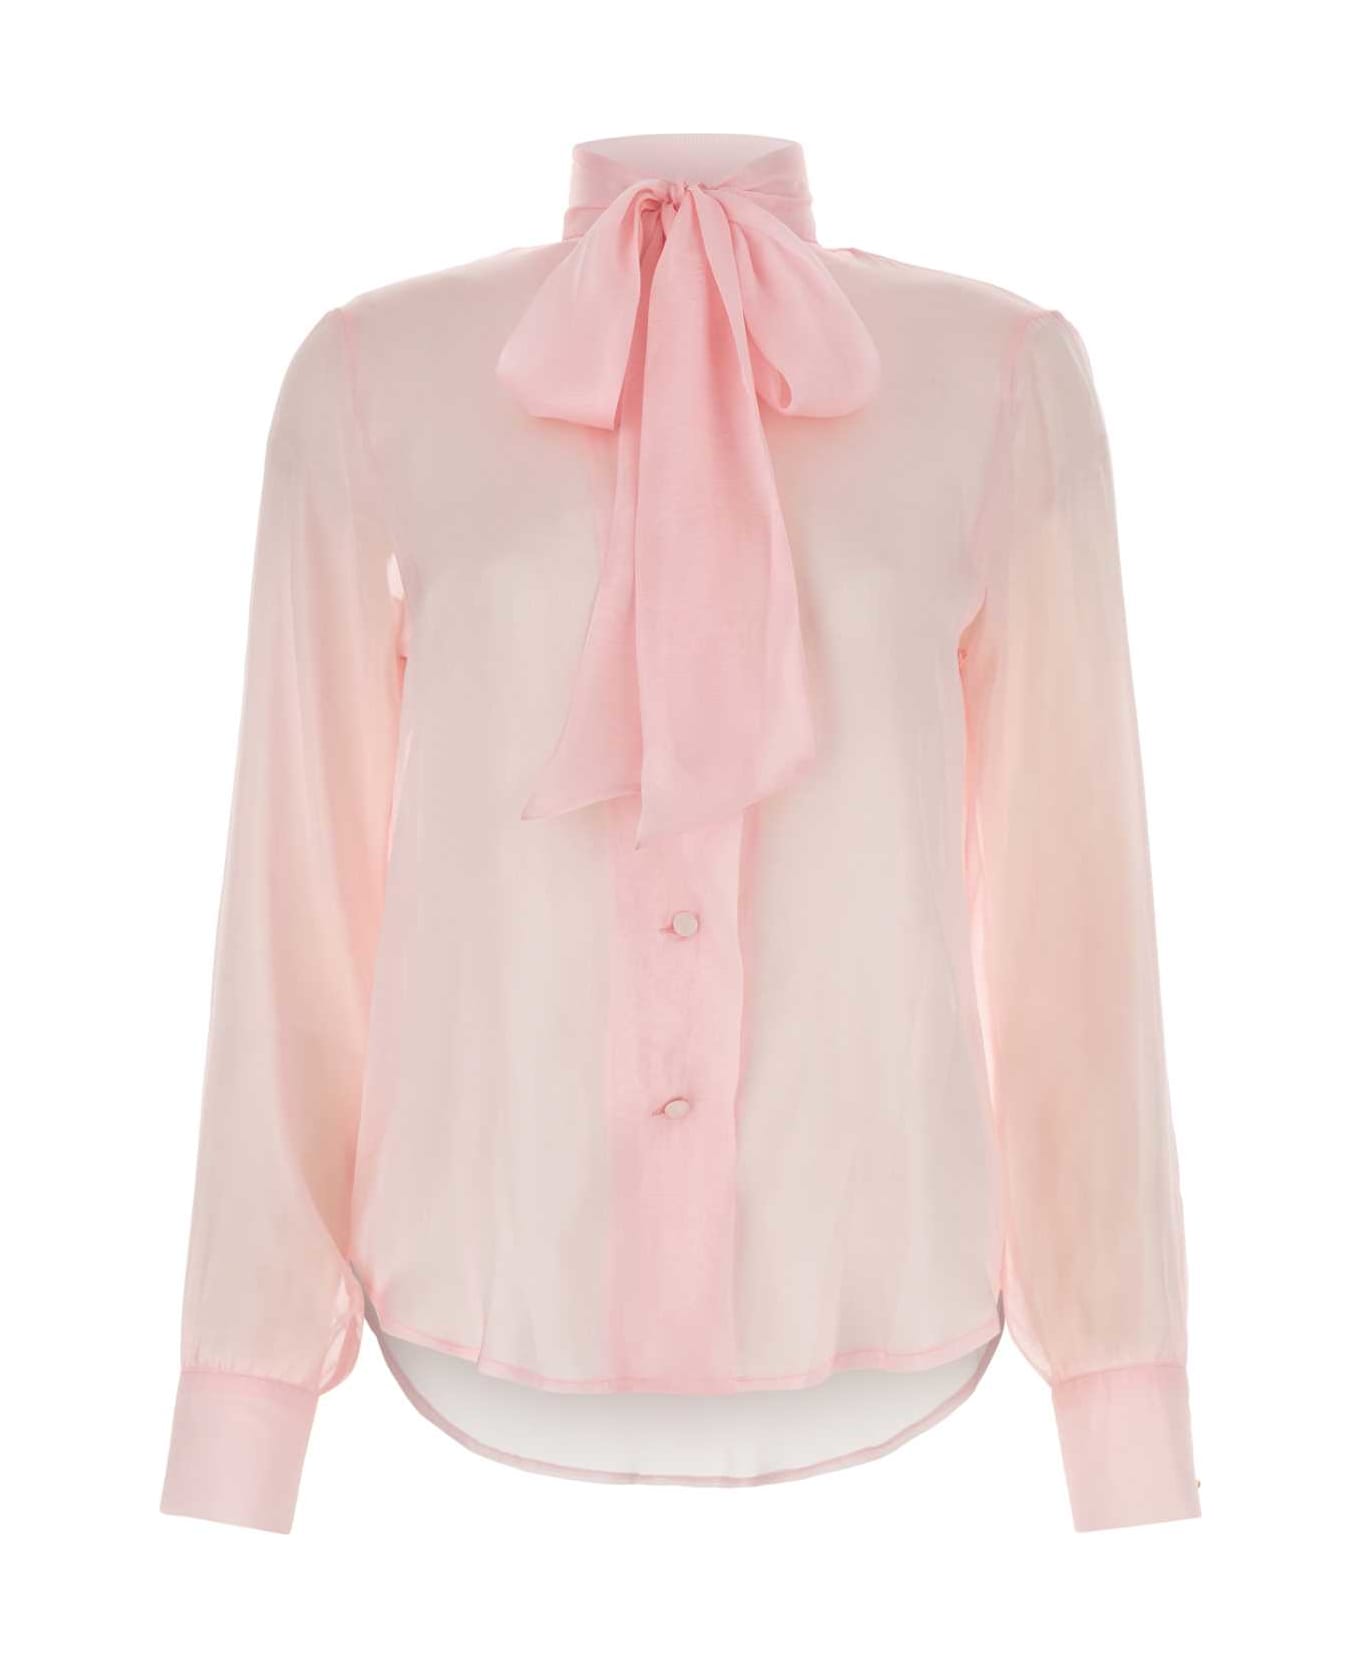 Hebe Studio Pink Chiffon Ava Shirt - PINK